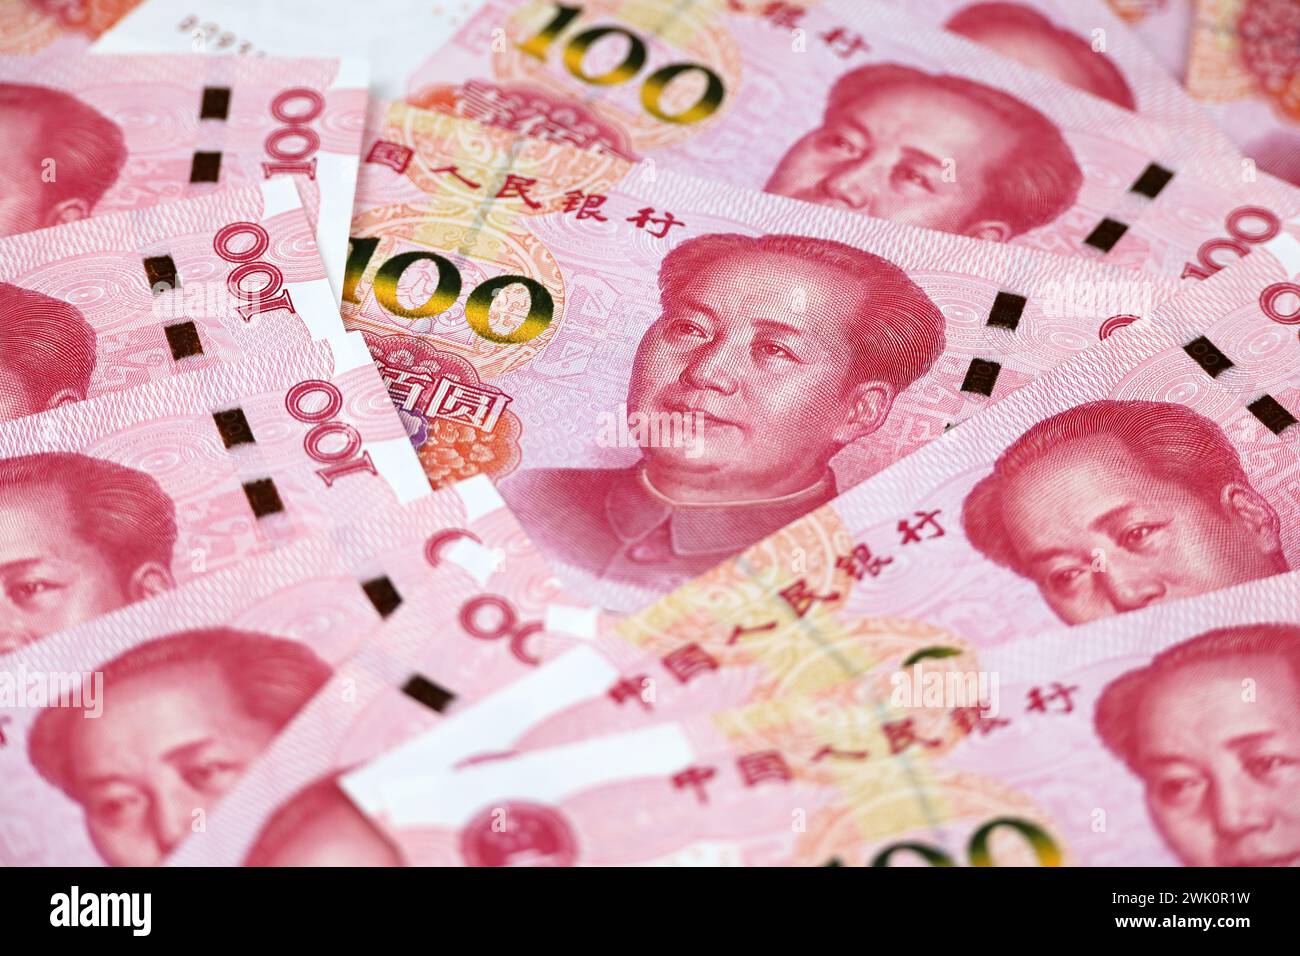 Chinesische Yuan-Banknoten, Renminbi. Das Konzept der Wirtschaft Chinas, der Wechselkurs Stockfoto